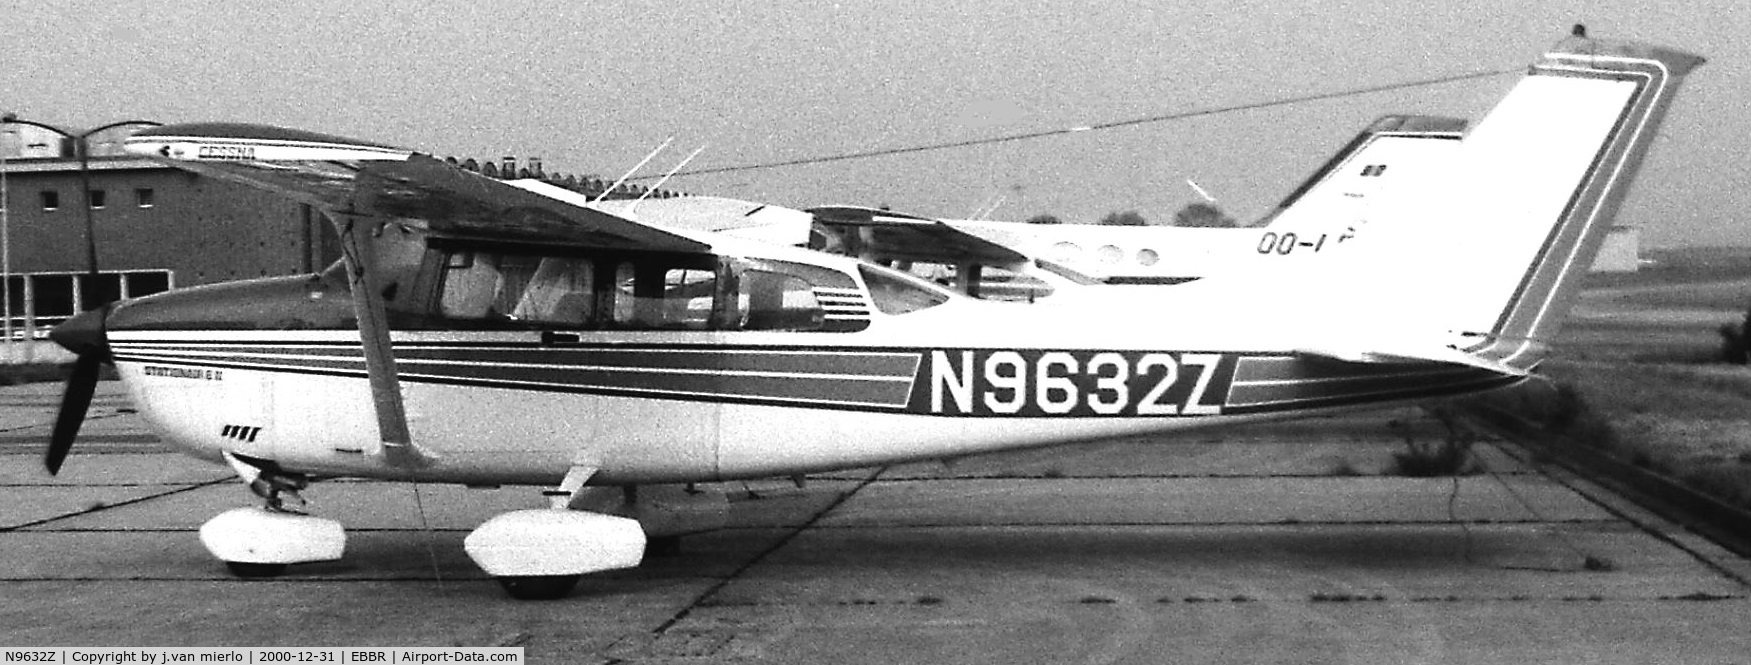 N9632Z, 1982 Cessna TU206G Turbo Stationair C/N U20606585, Brussels, ABELAG